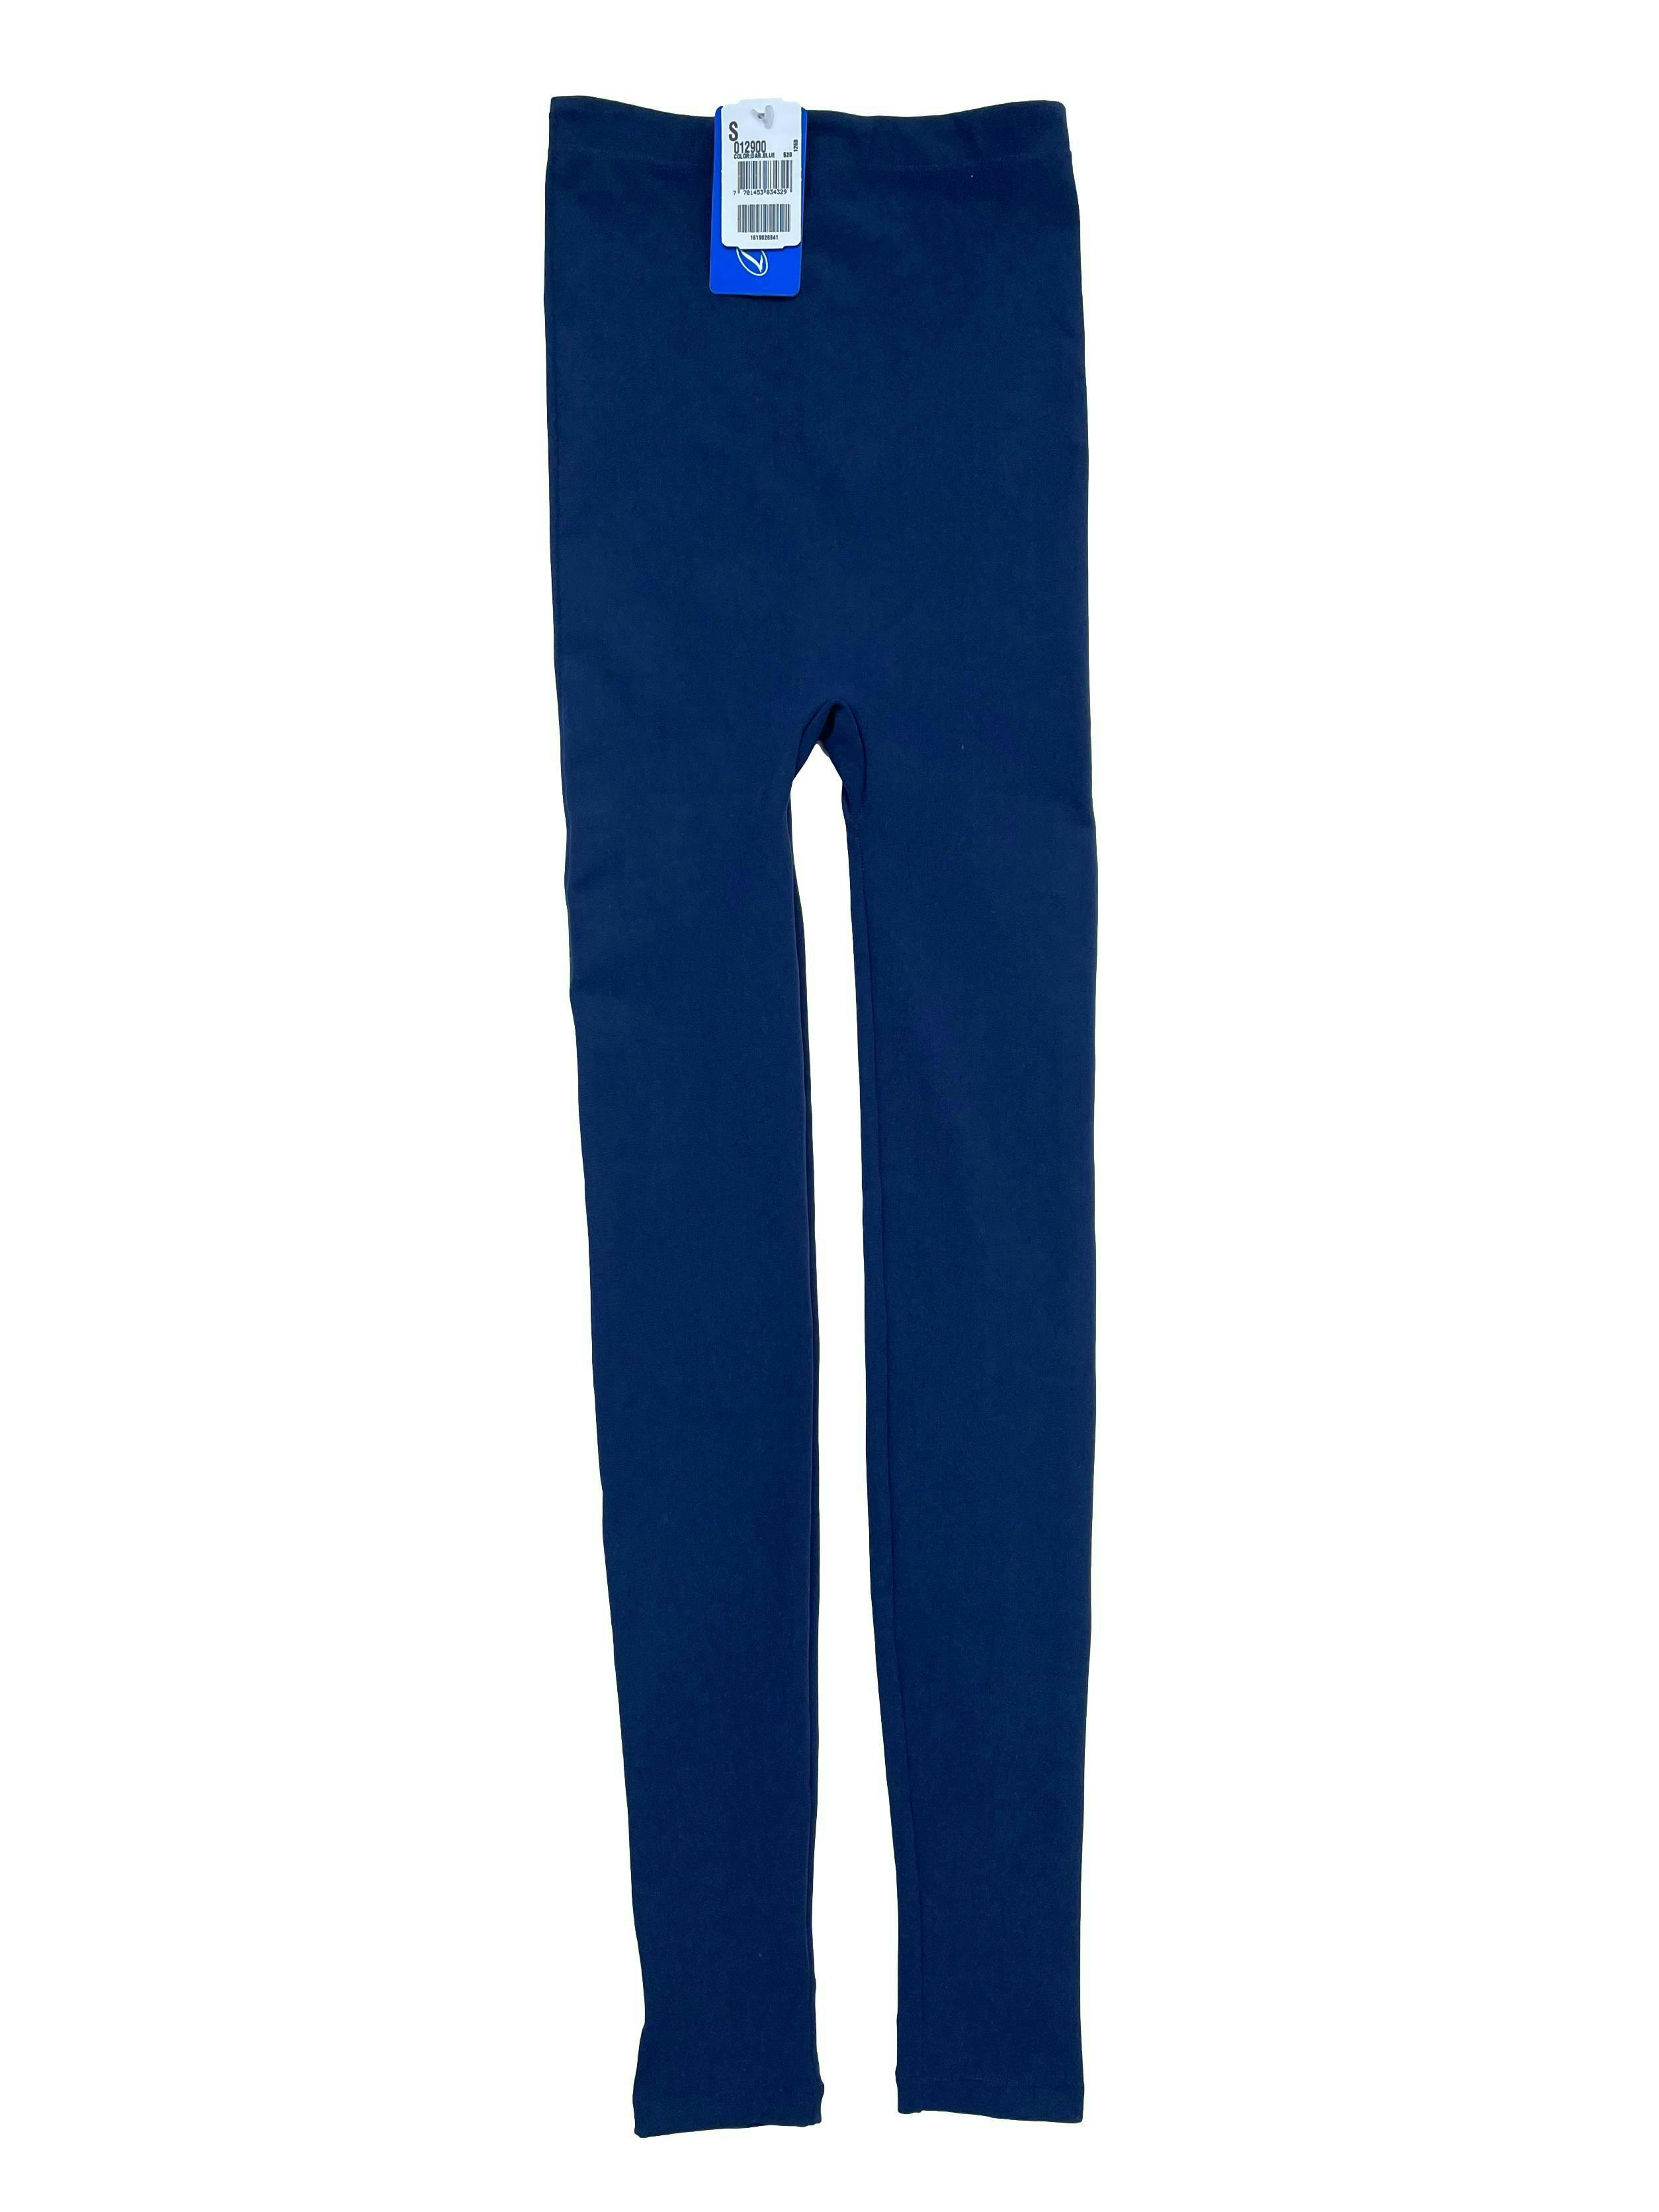 Leggings Leonisa azul super stretch de tiro alto. Largo 85cm. Nueva con etiqueta